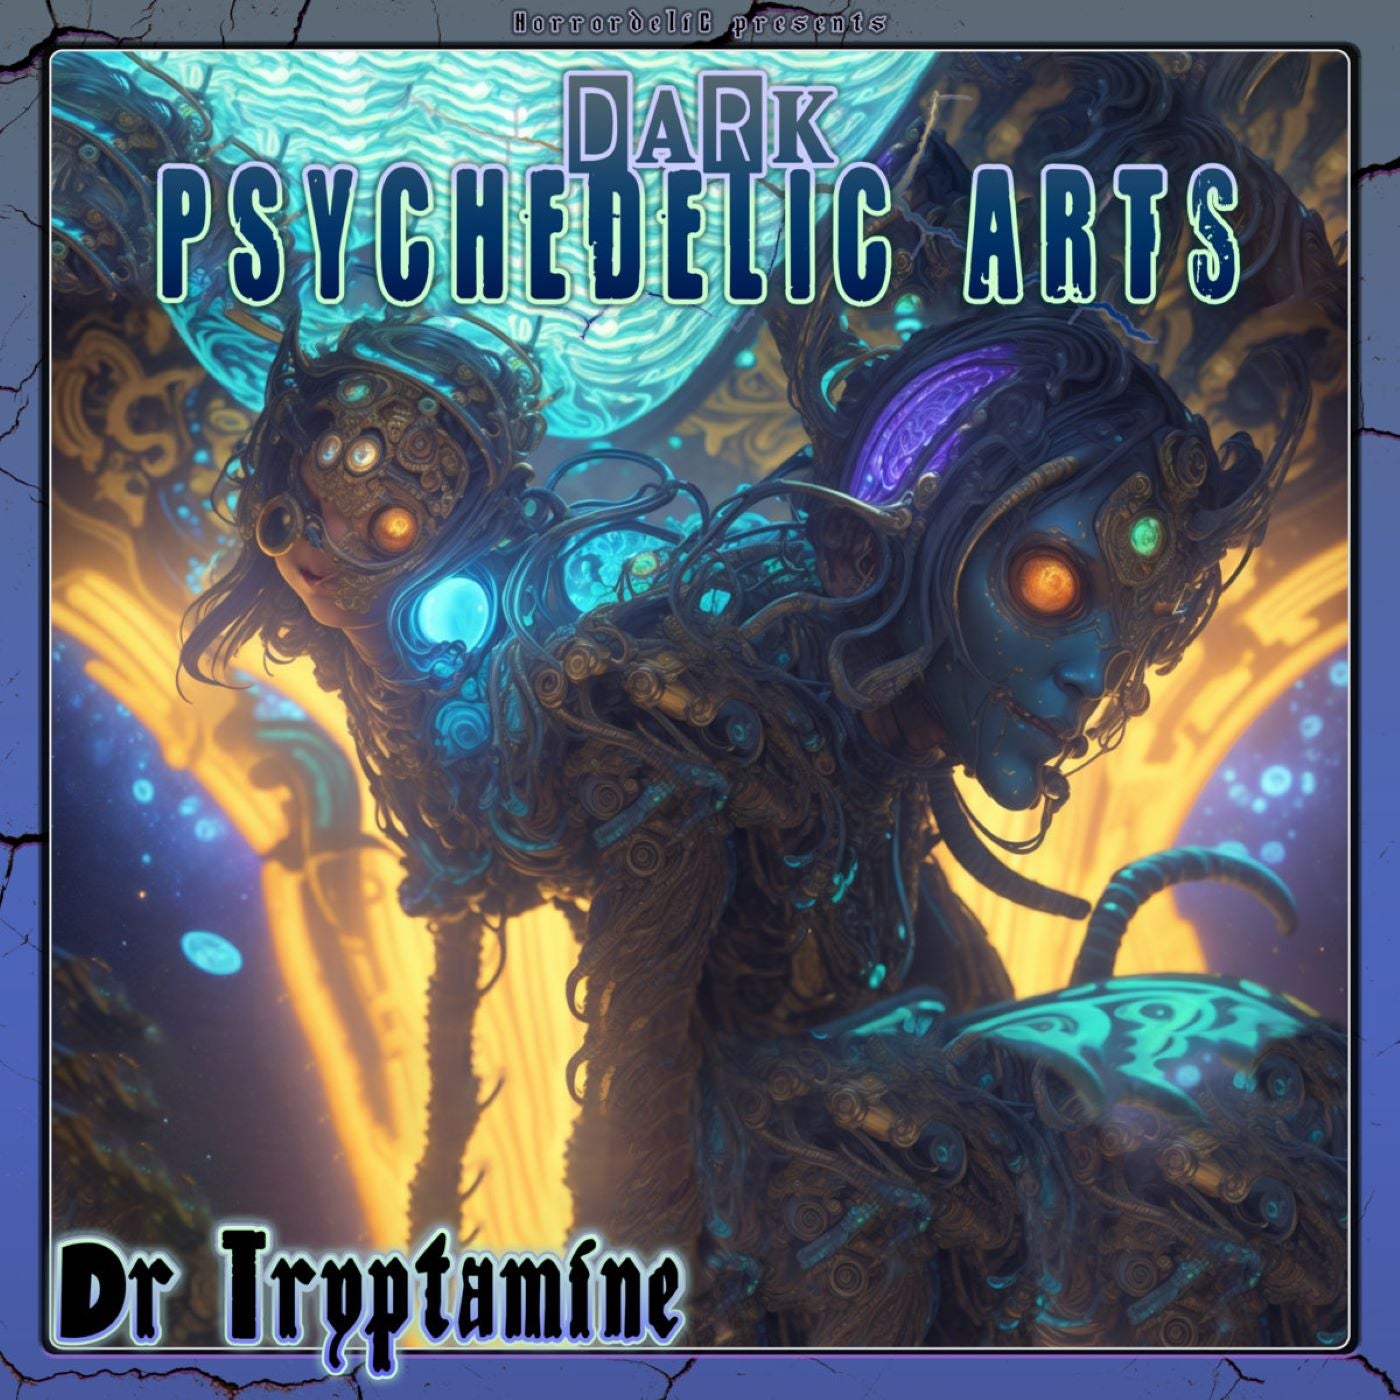 Dark Psychedelic Arts